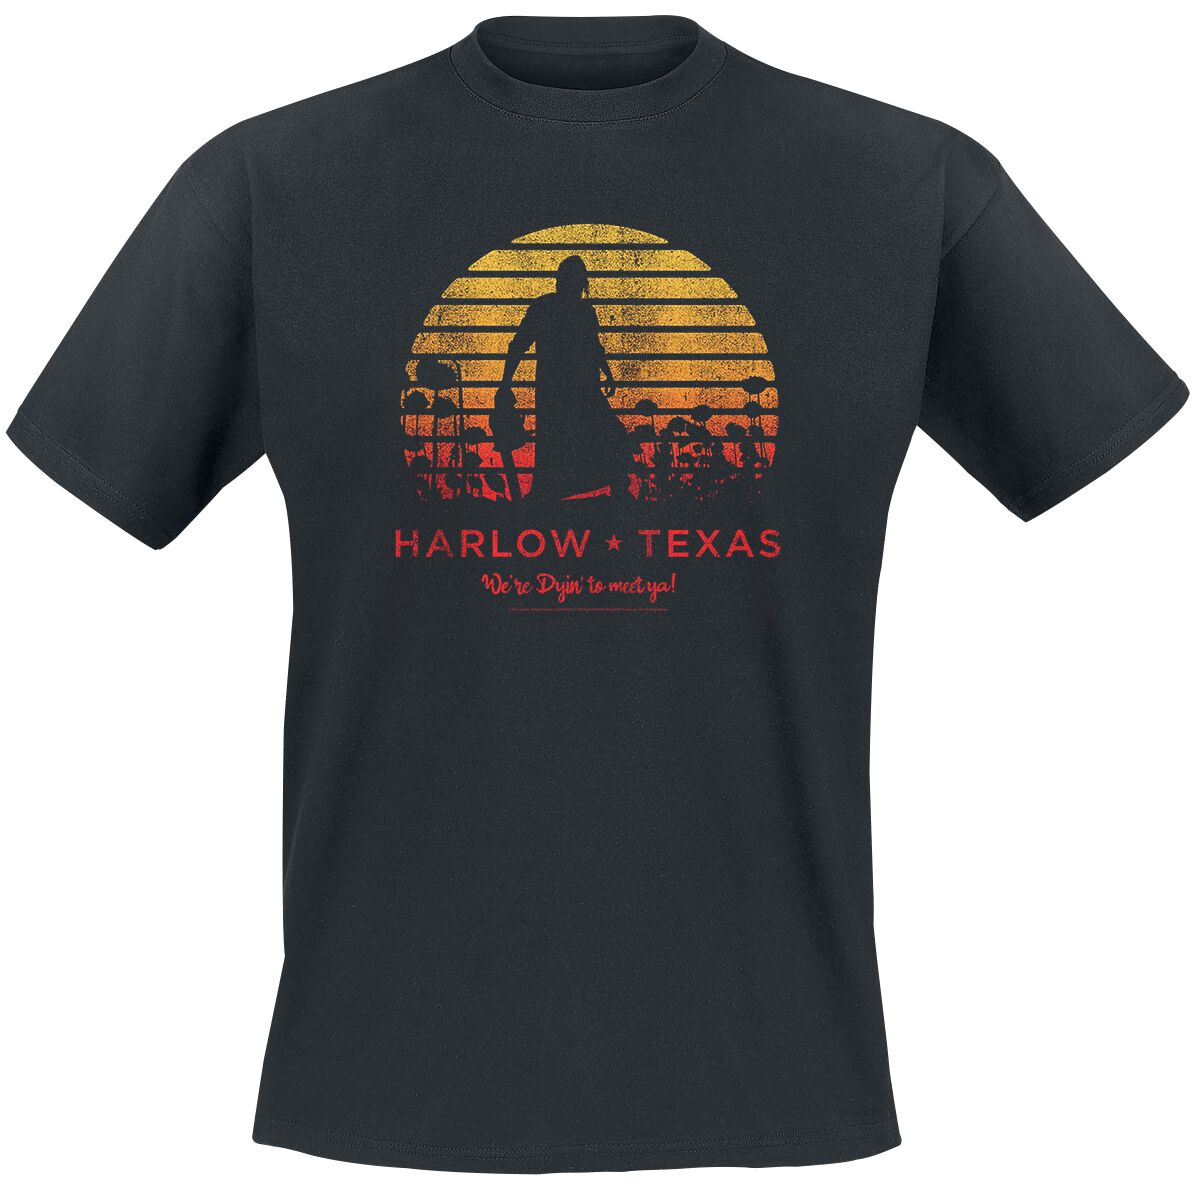 Texas Chainsaw Massacre Harlow Texas T-Shirt black